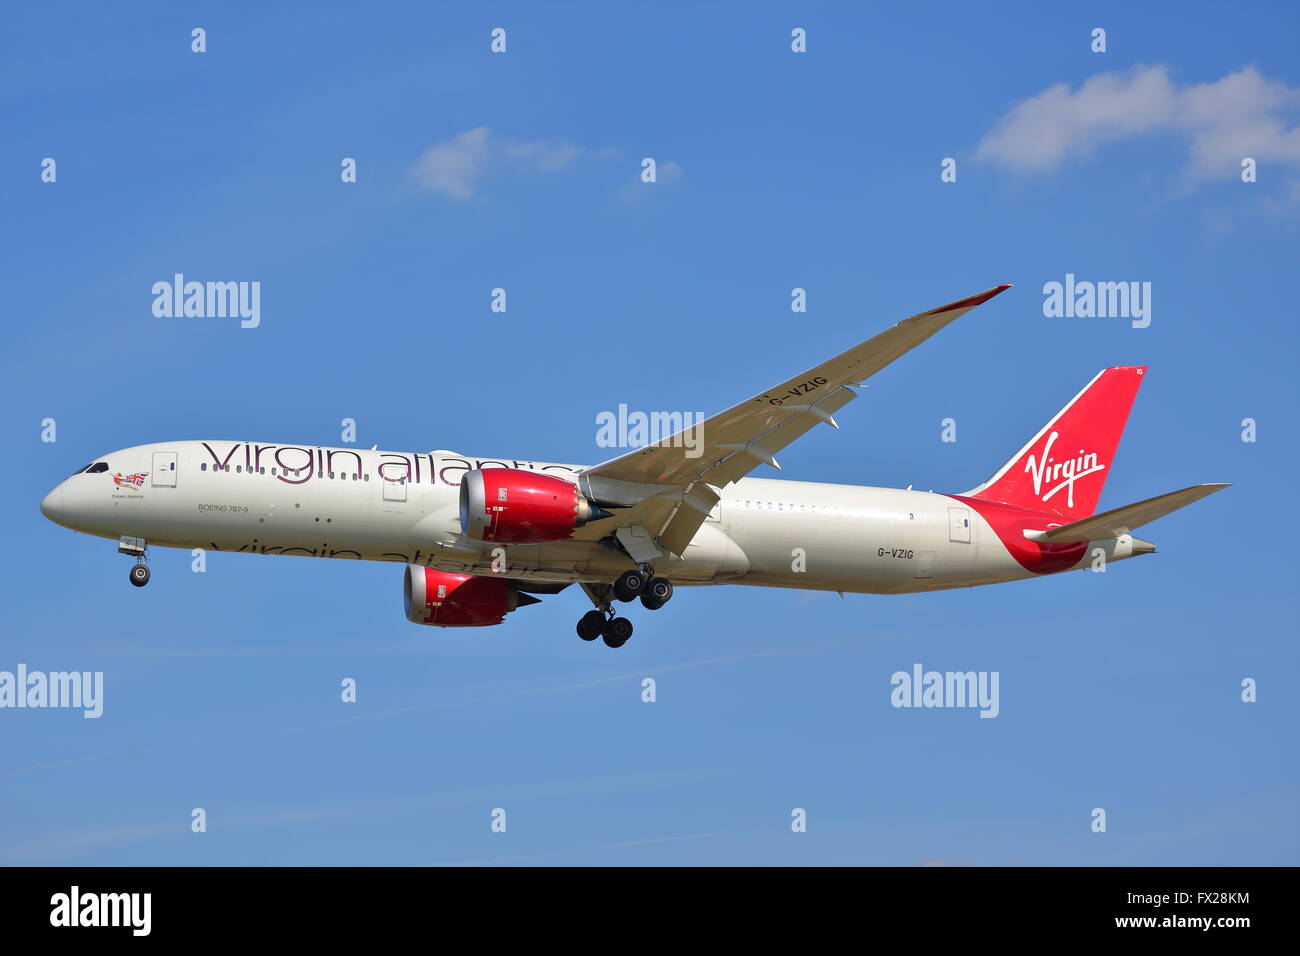 Virgin Atlantic Boeing 787-9 Dreamliner VZIG G-arrivant à l'aéroport Heathrow de Londres, UK Banque D'Images